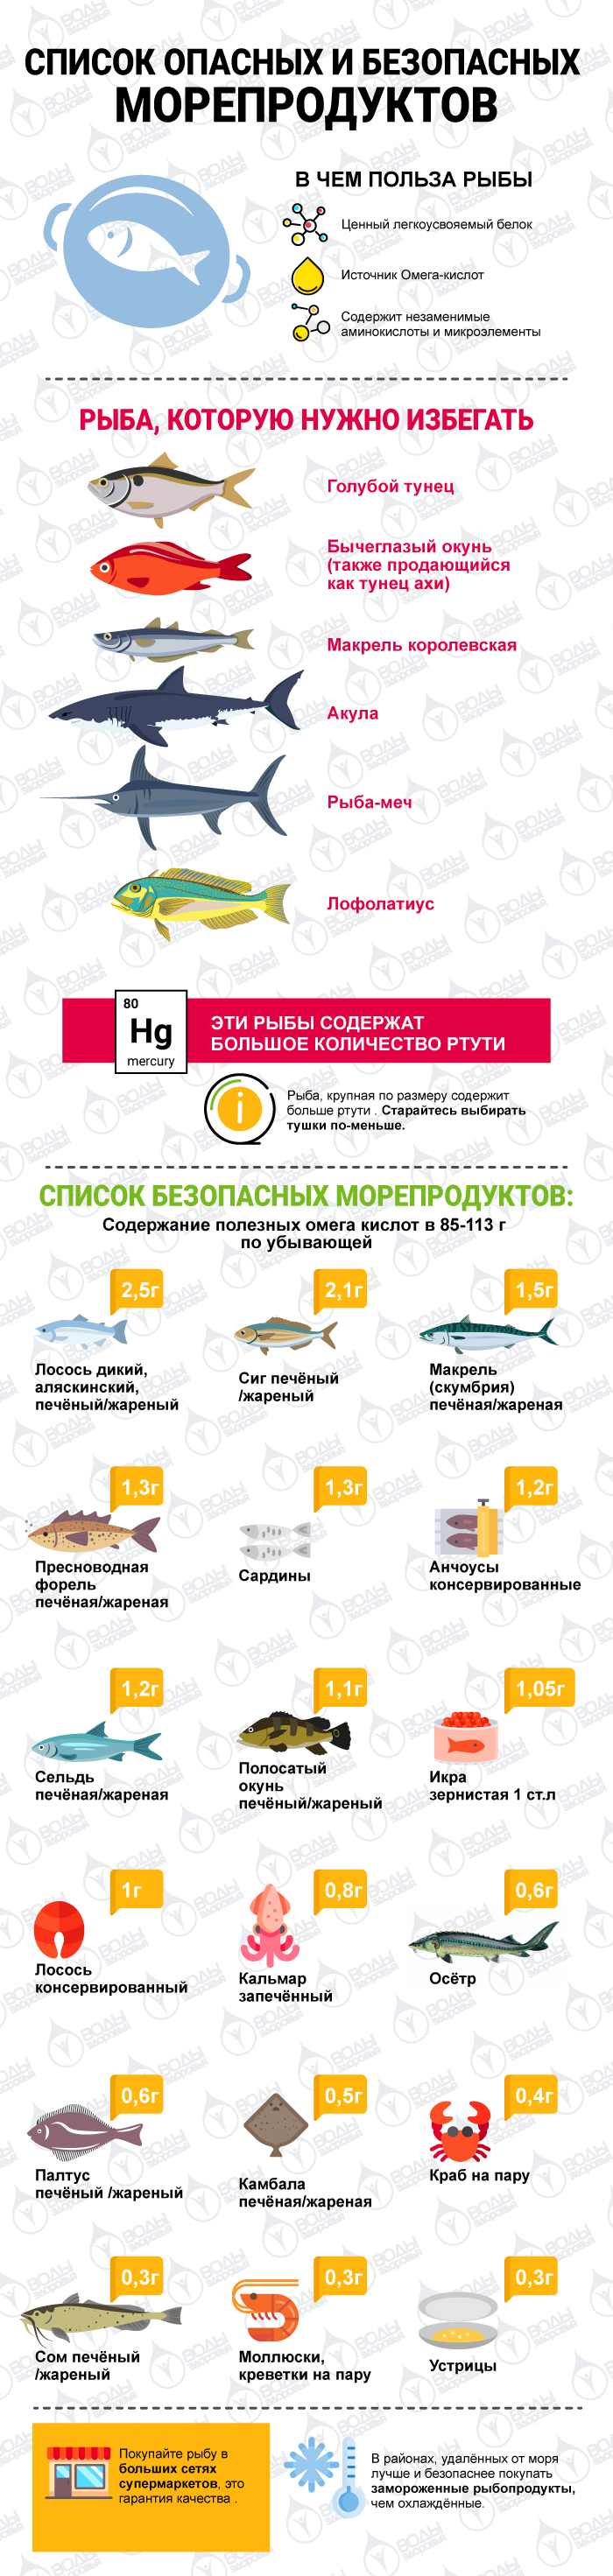 Список опасных и безопасных морепродуктов